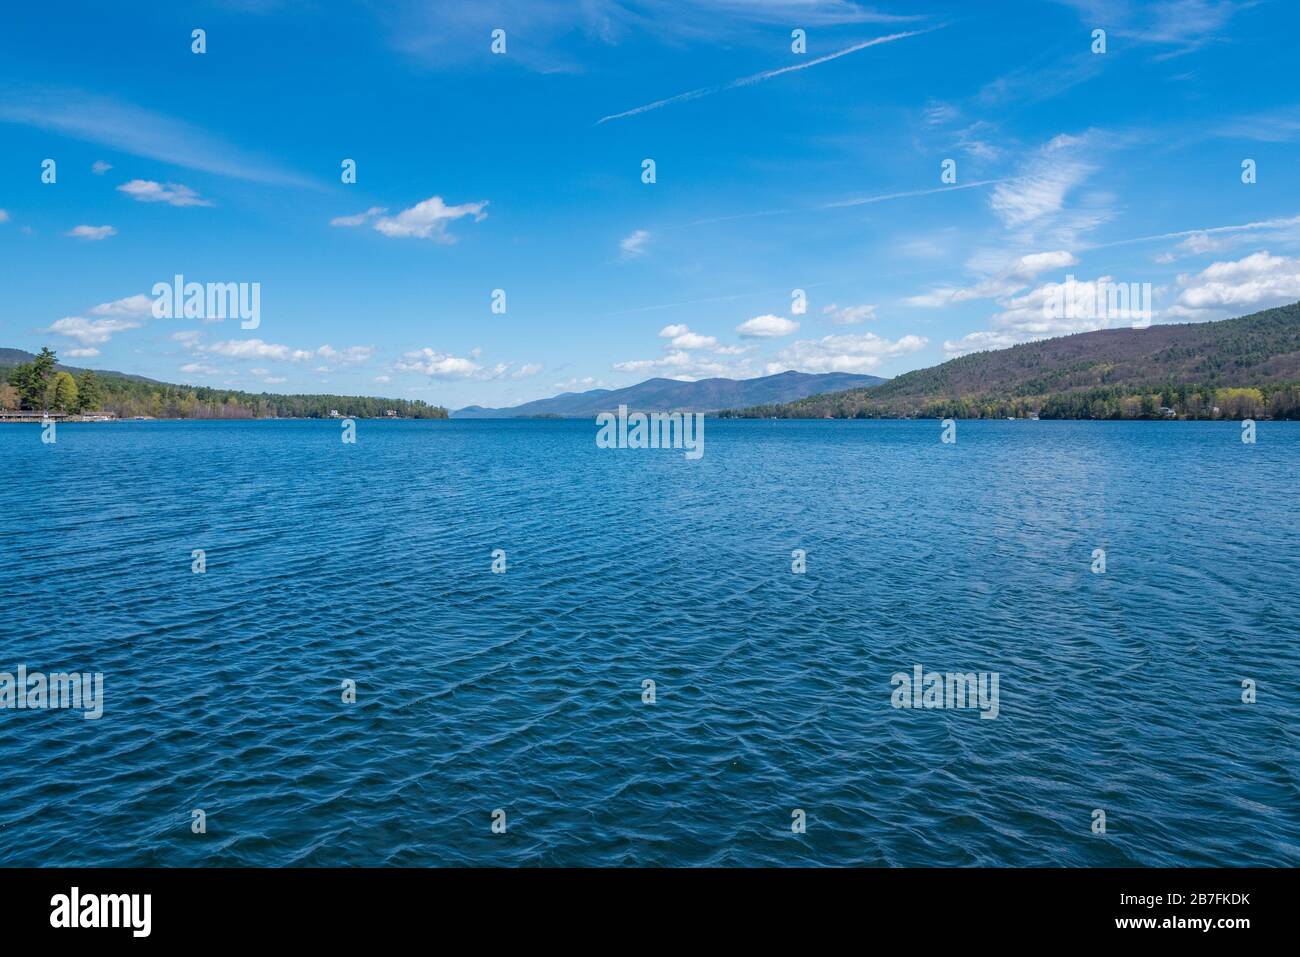 Beautiful Lake George in upstate New York in USA Stock Photo